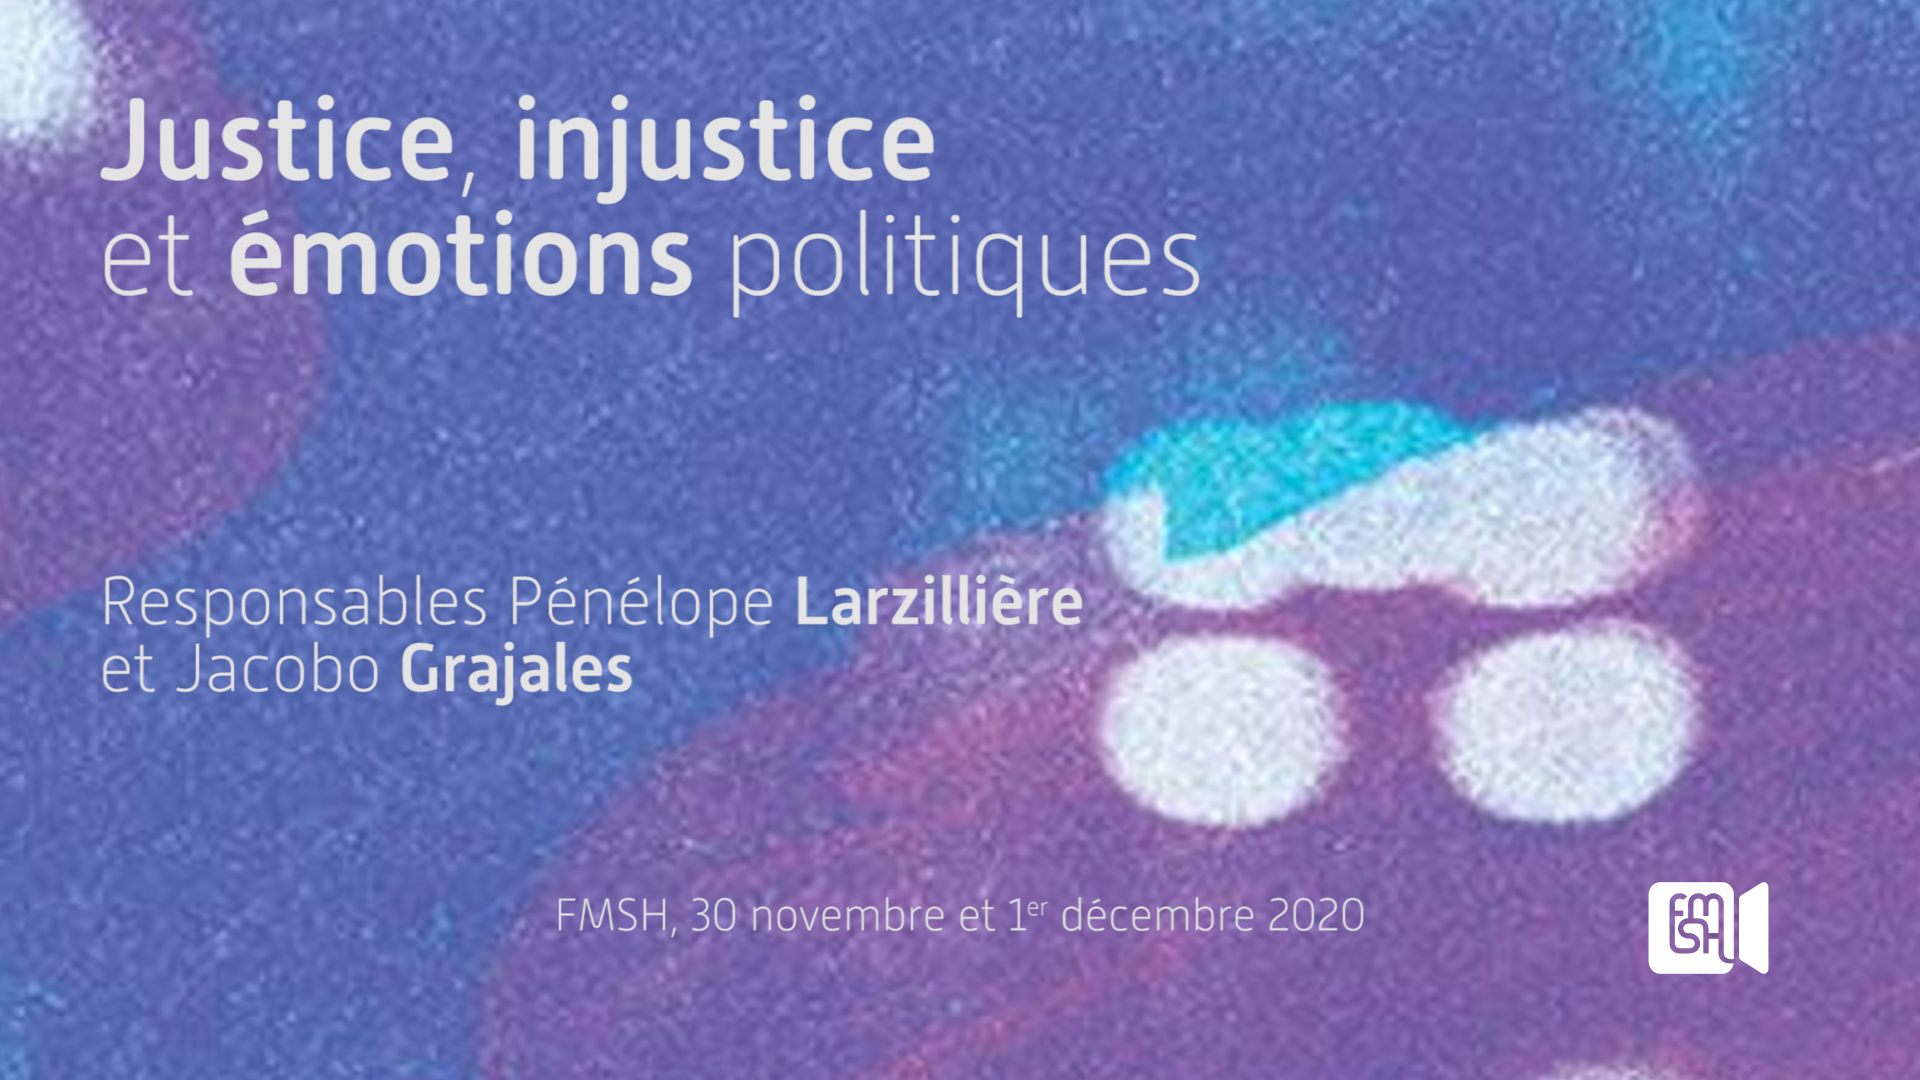 Justice, injustice et émotions politiques, Colloque international « Sortir de la violence », Session 3